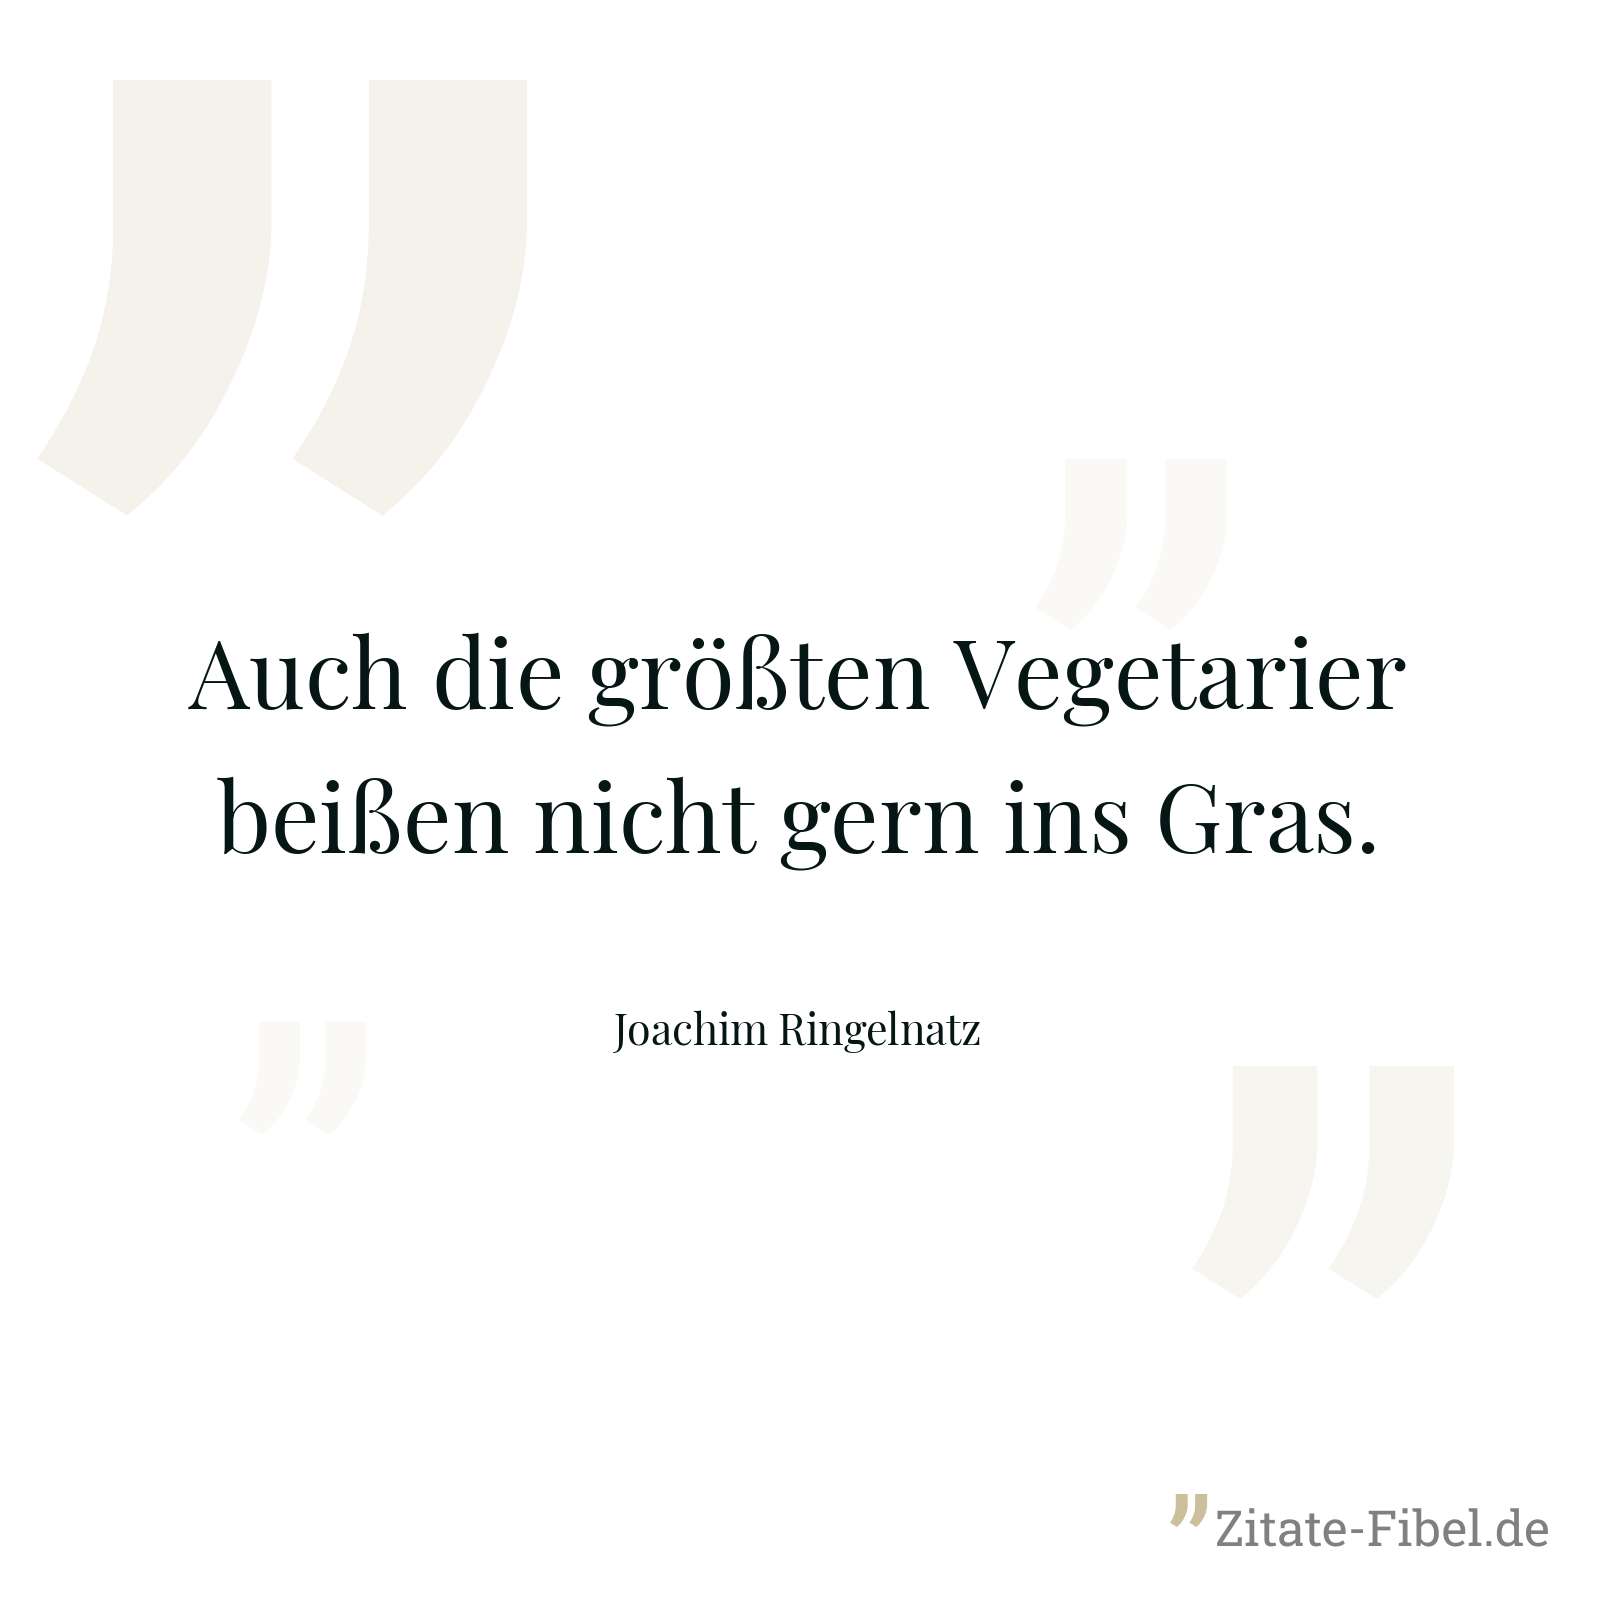 Auch die größten Vegetarier beißen nicht gern ins Gras. - Joachim Ringelnatz